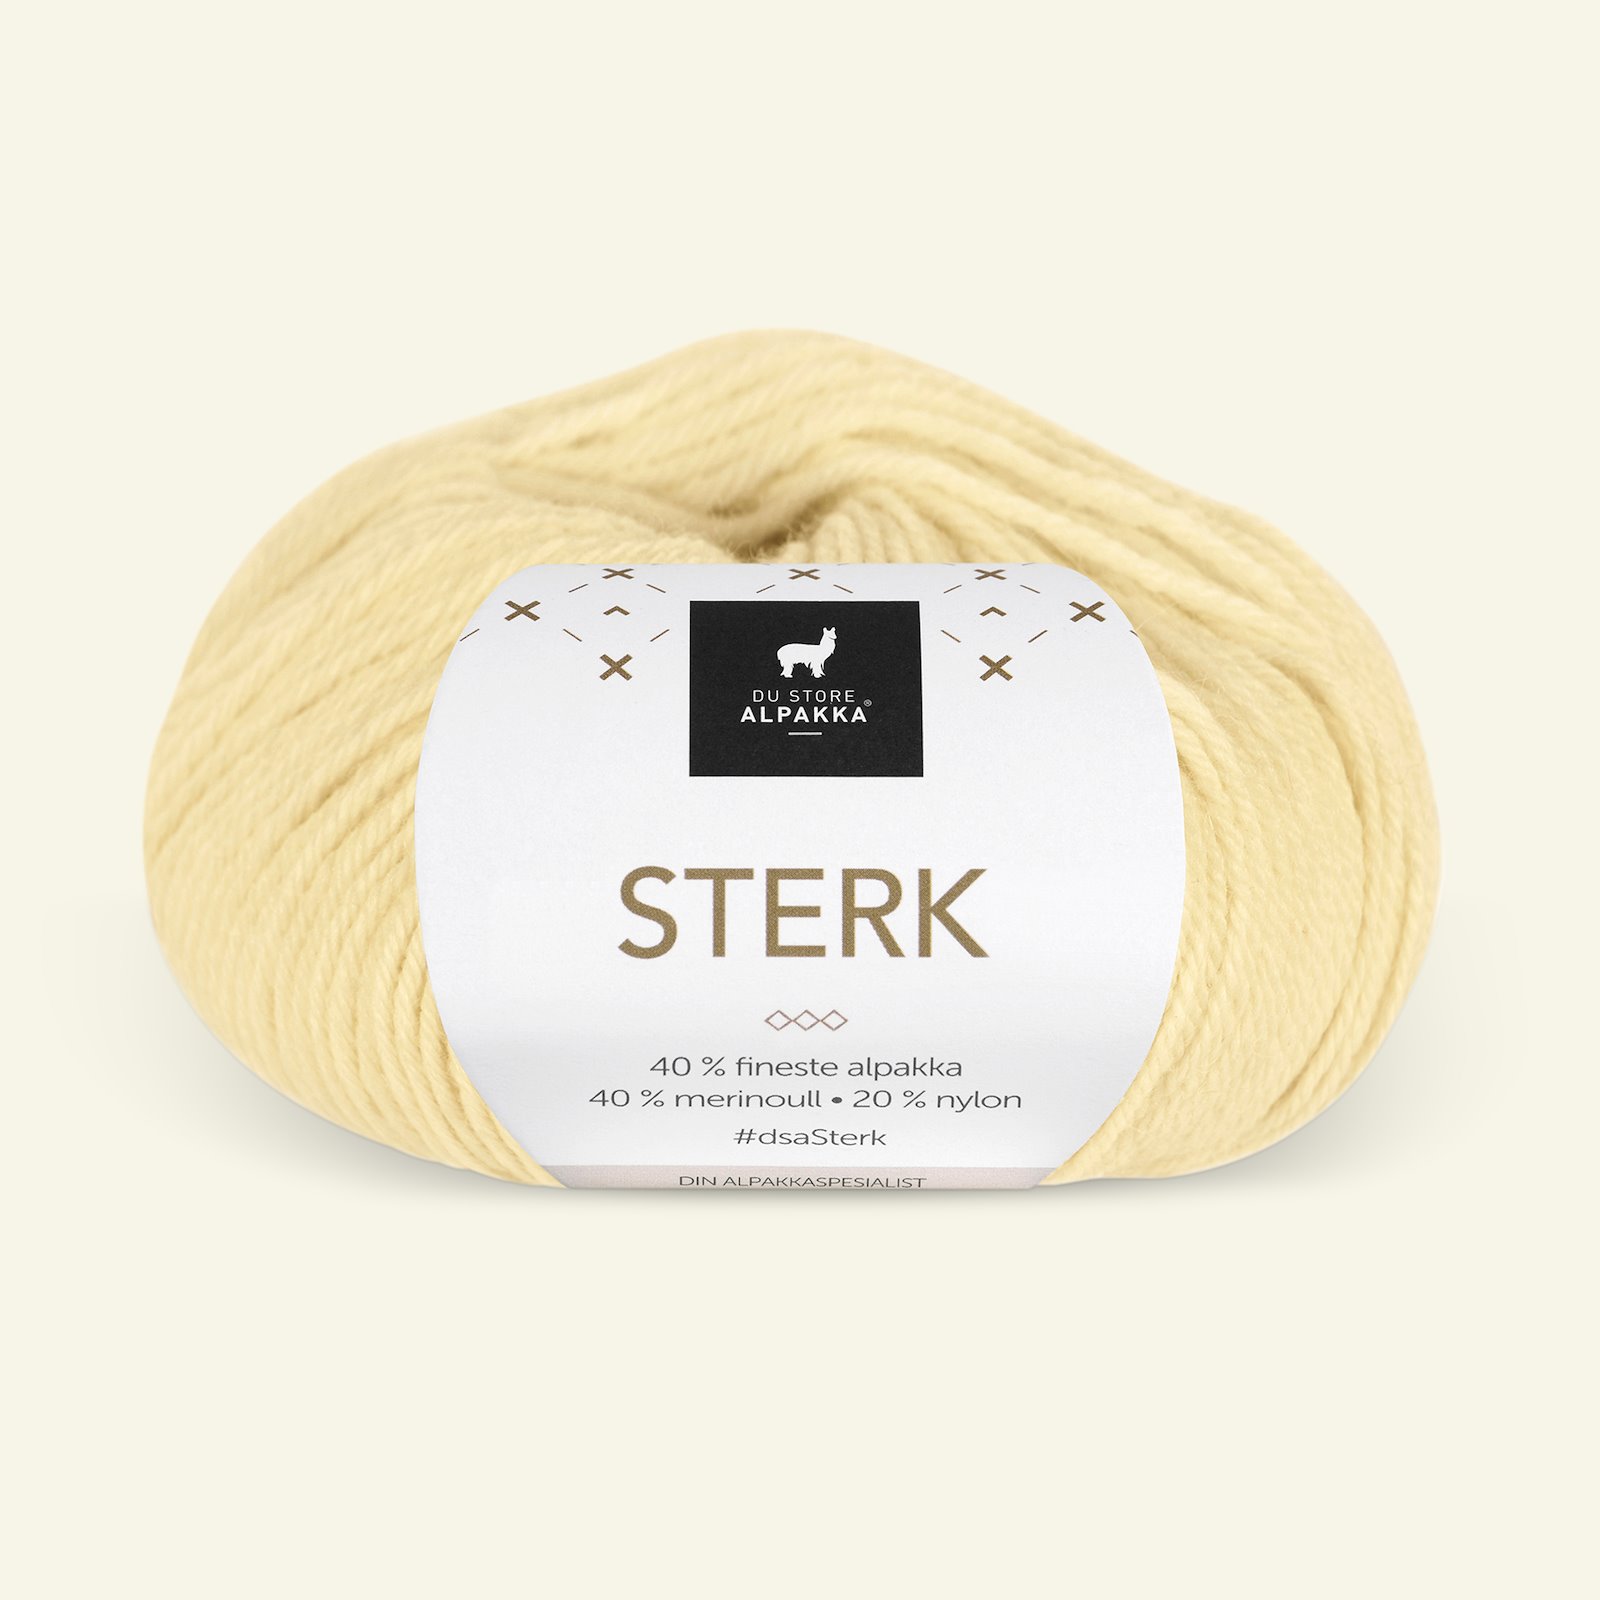 Du Store Alpakka, alpaca merino mixed yarn "Sterk", light yellow (913) 90000705_pack